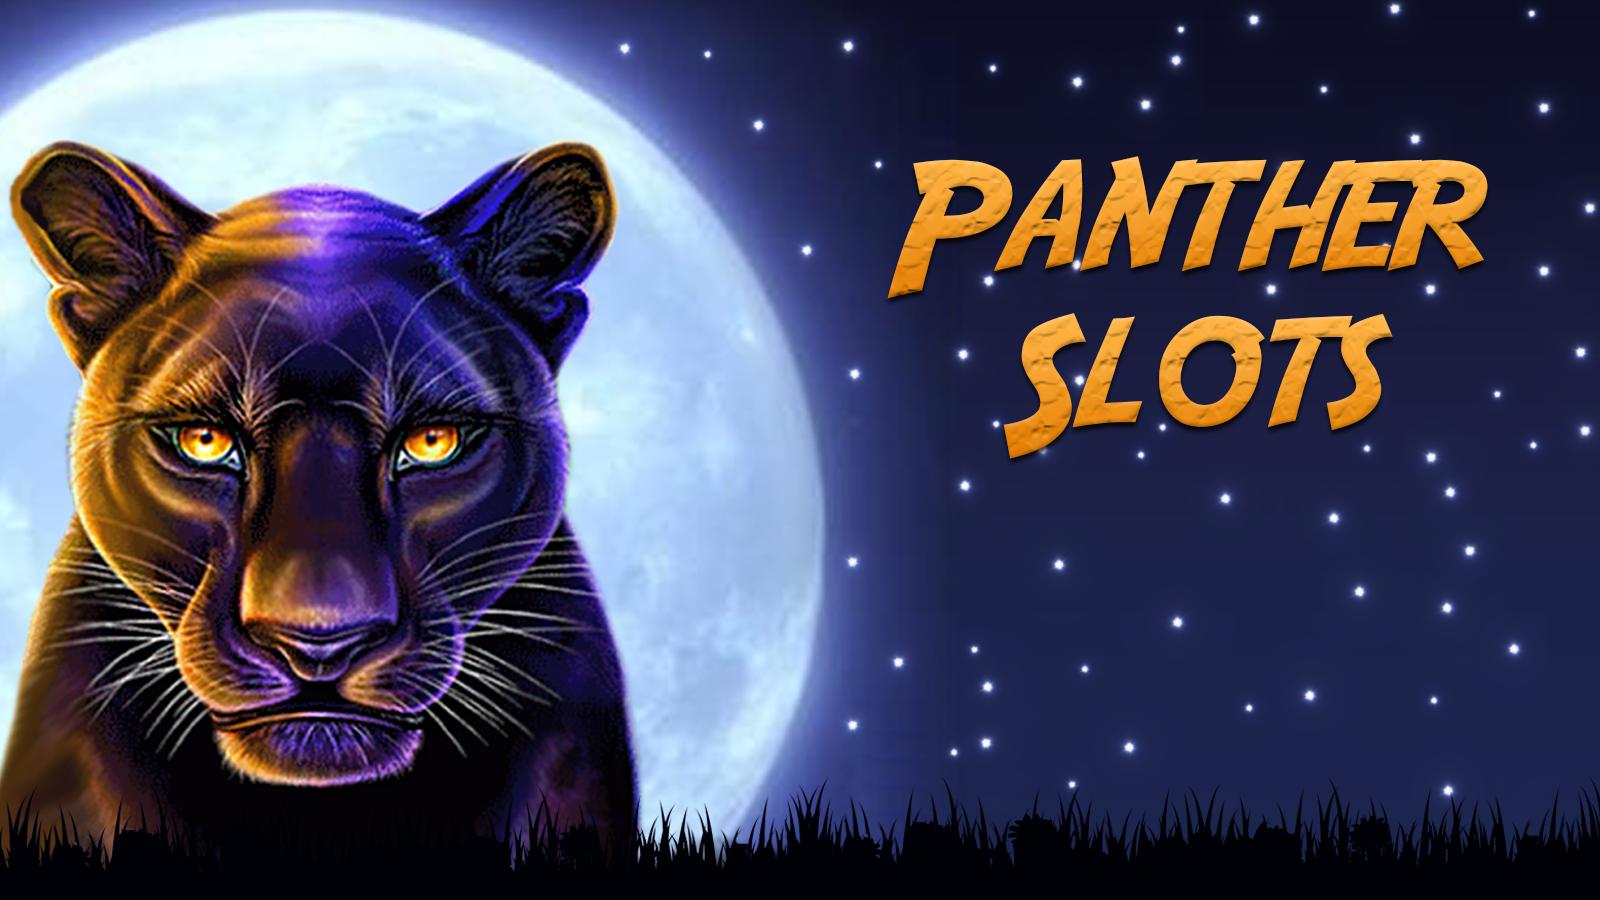 รีวิวเกมสล็อต Panther Moon จากค่ายเกม SLOTXO ใครฆ่าเสือดำไม่รู้แต่ที่รู้ ๆ เกมนี้แจกเงินแน่นอน